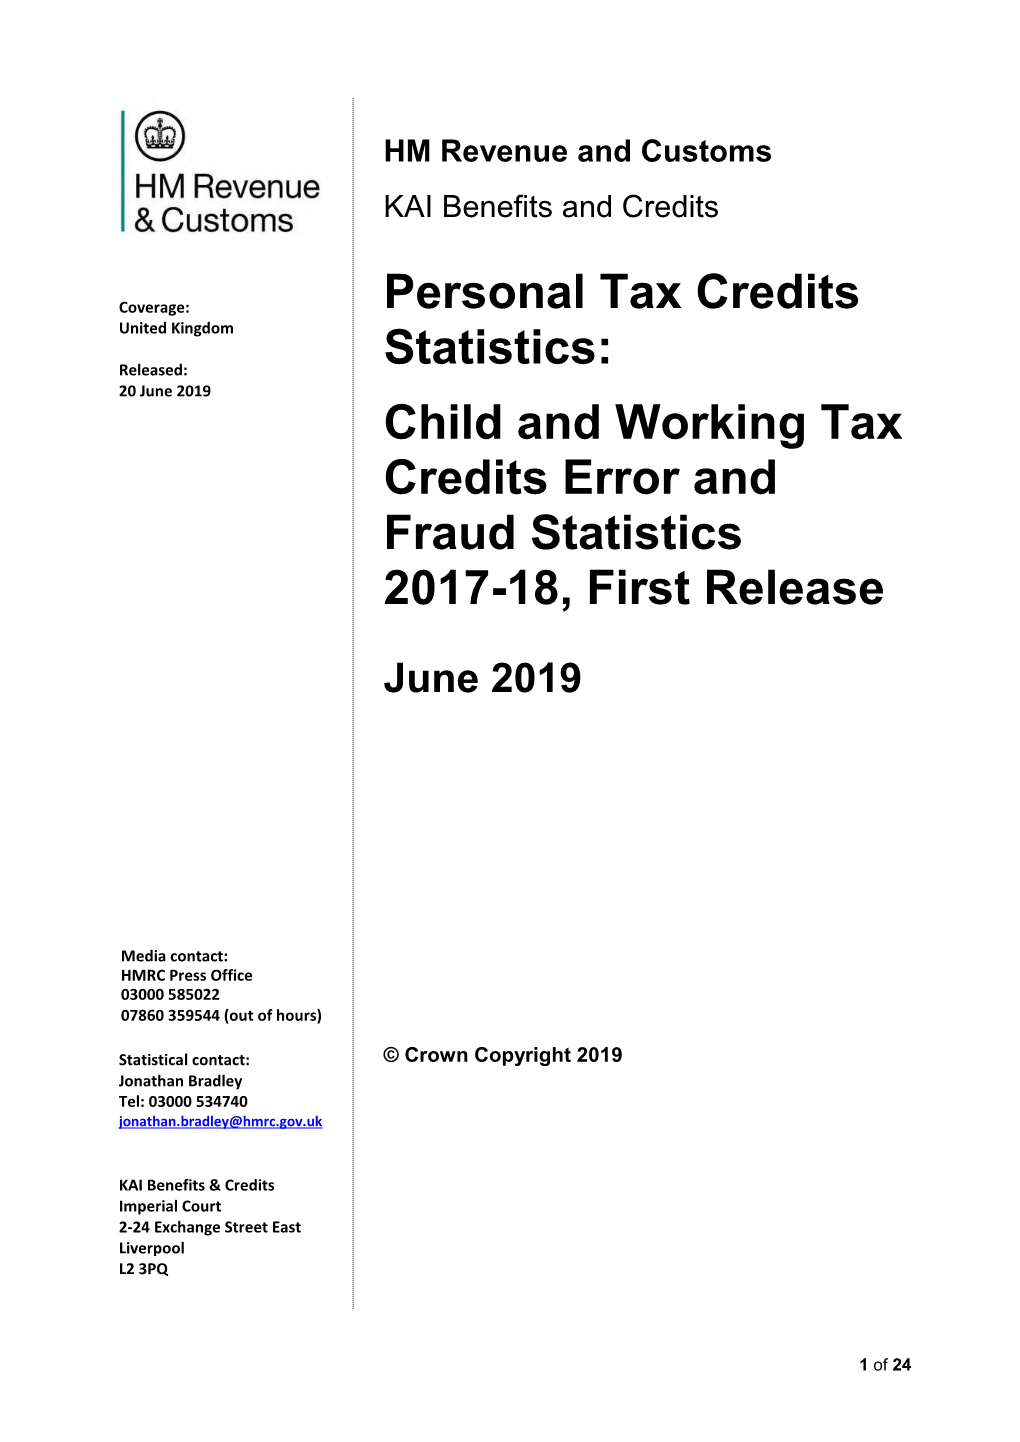 Personal Tax Credits Statistics